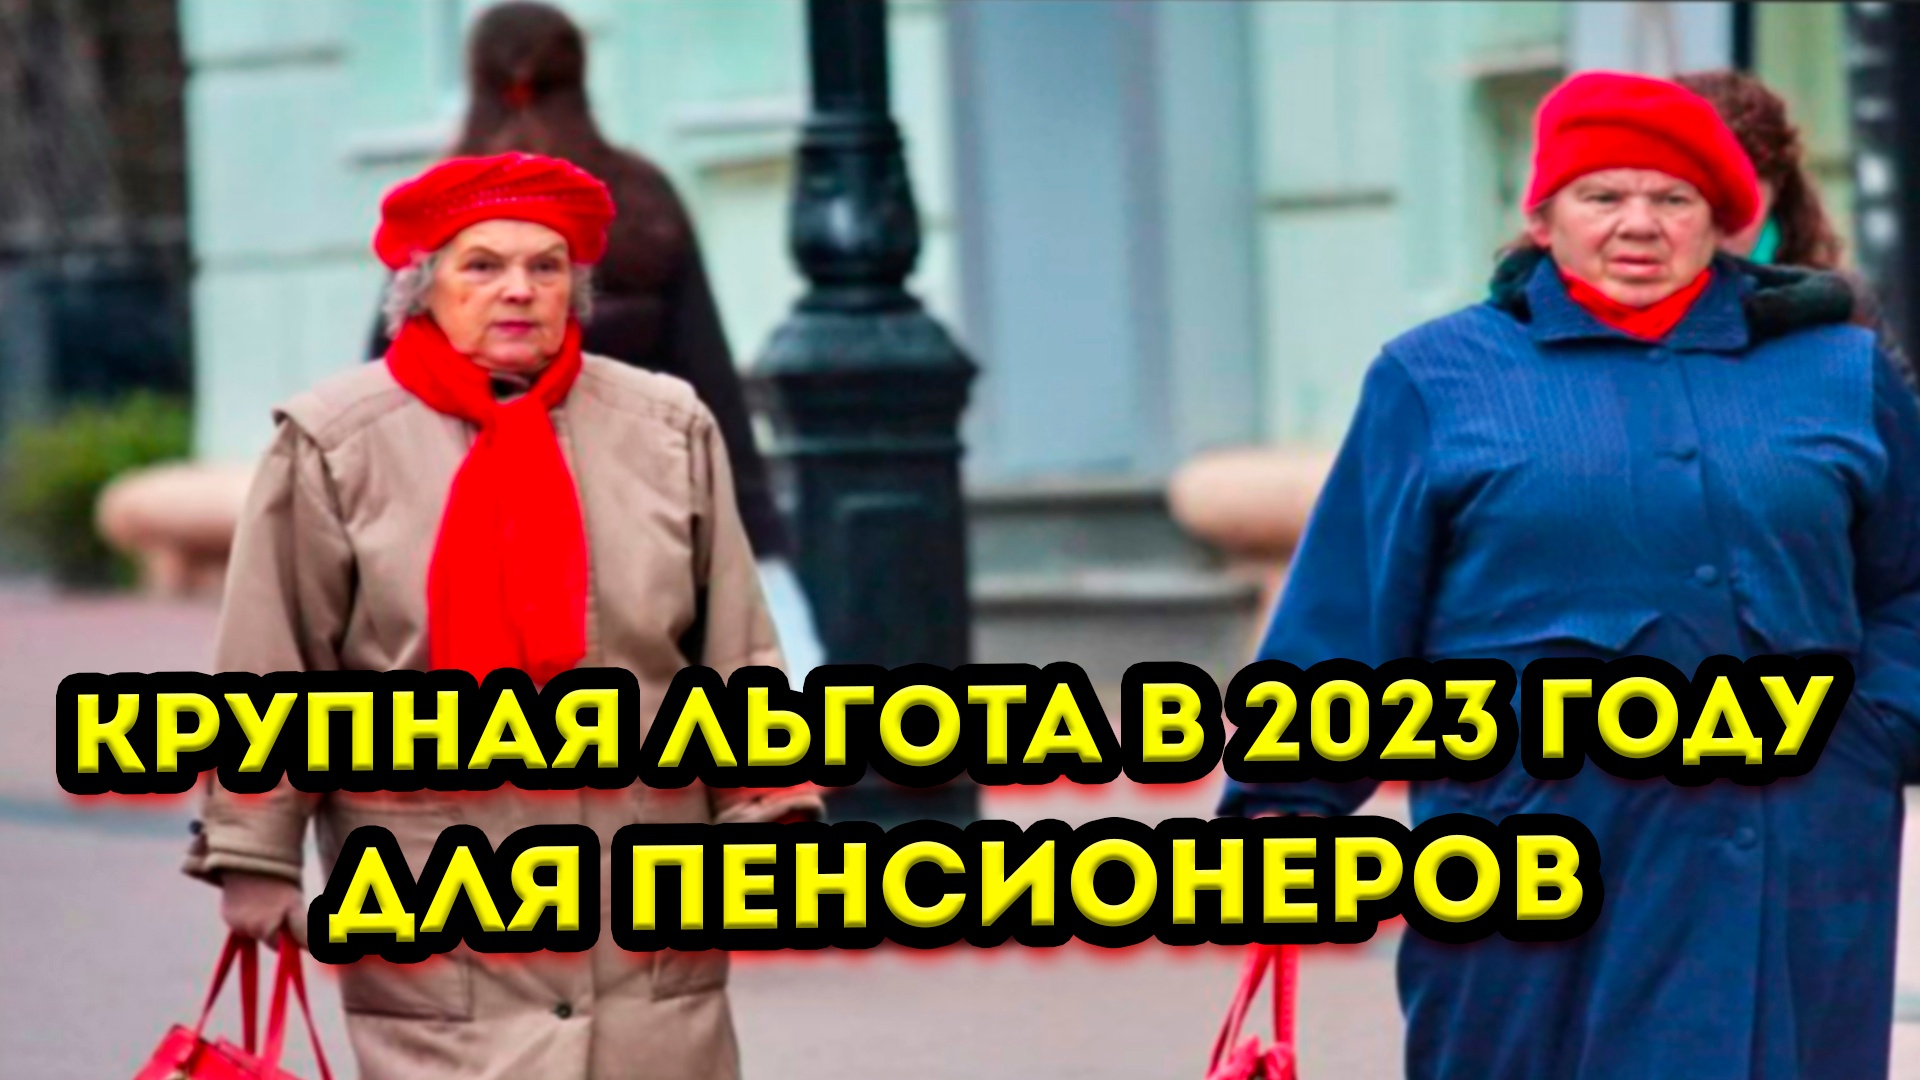 Налоги пенсионеров в 2023 году. Пенсионеры в России. Индексация пенсий в 2023. Льготы пенсионерам 2023. Бездомные пенсионеры.